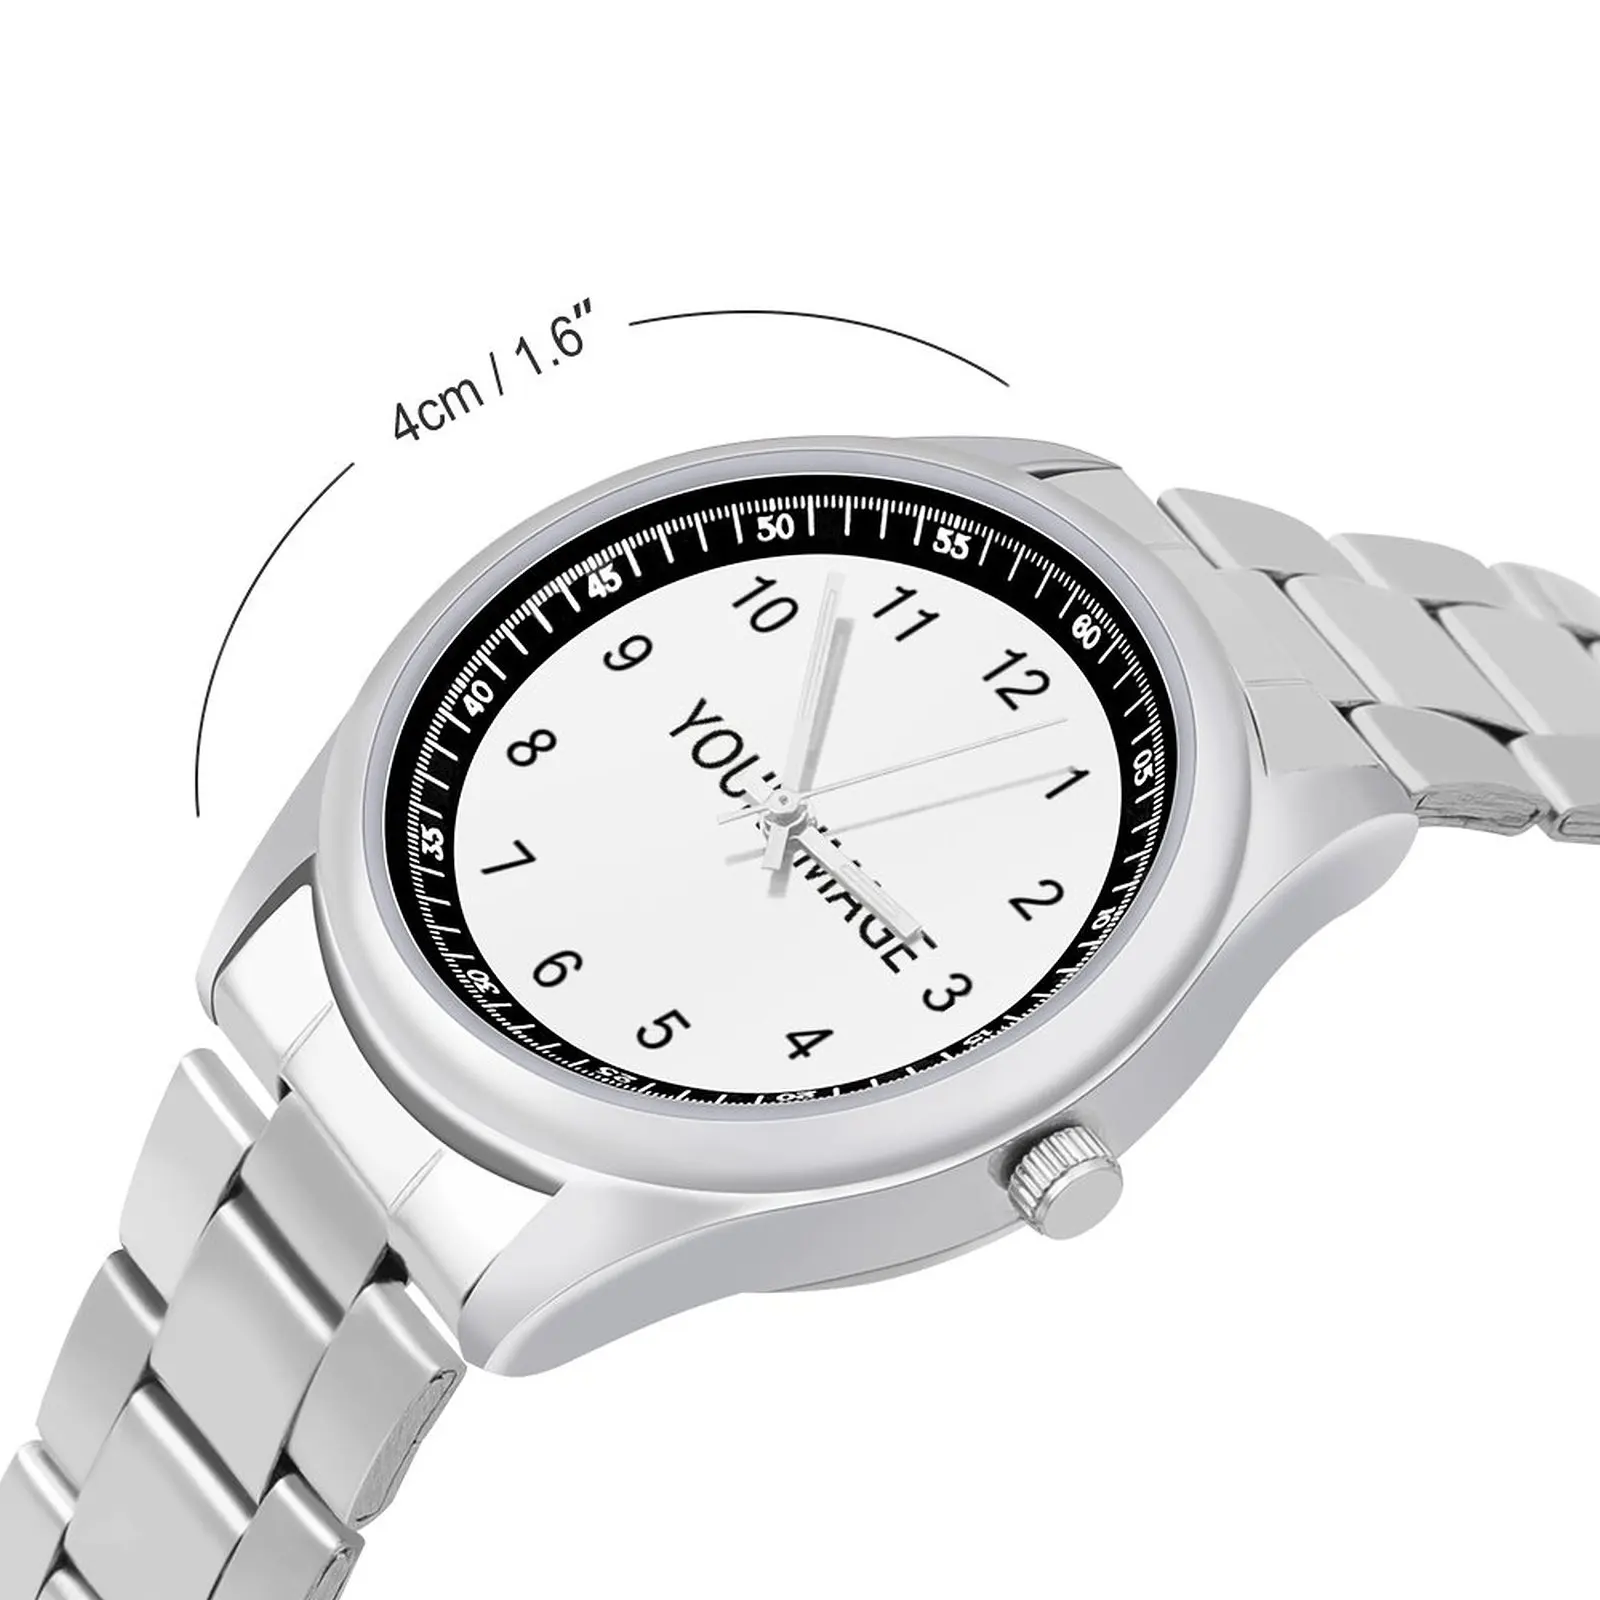 Your Image Custom Made Quartz Watch Custom Design Your Own Wrist Watch Customized Wristwatch